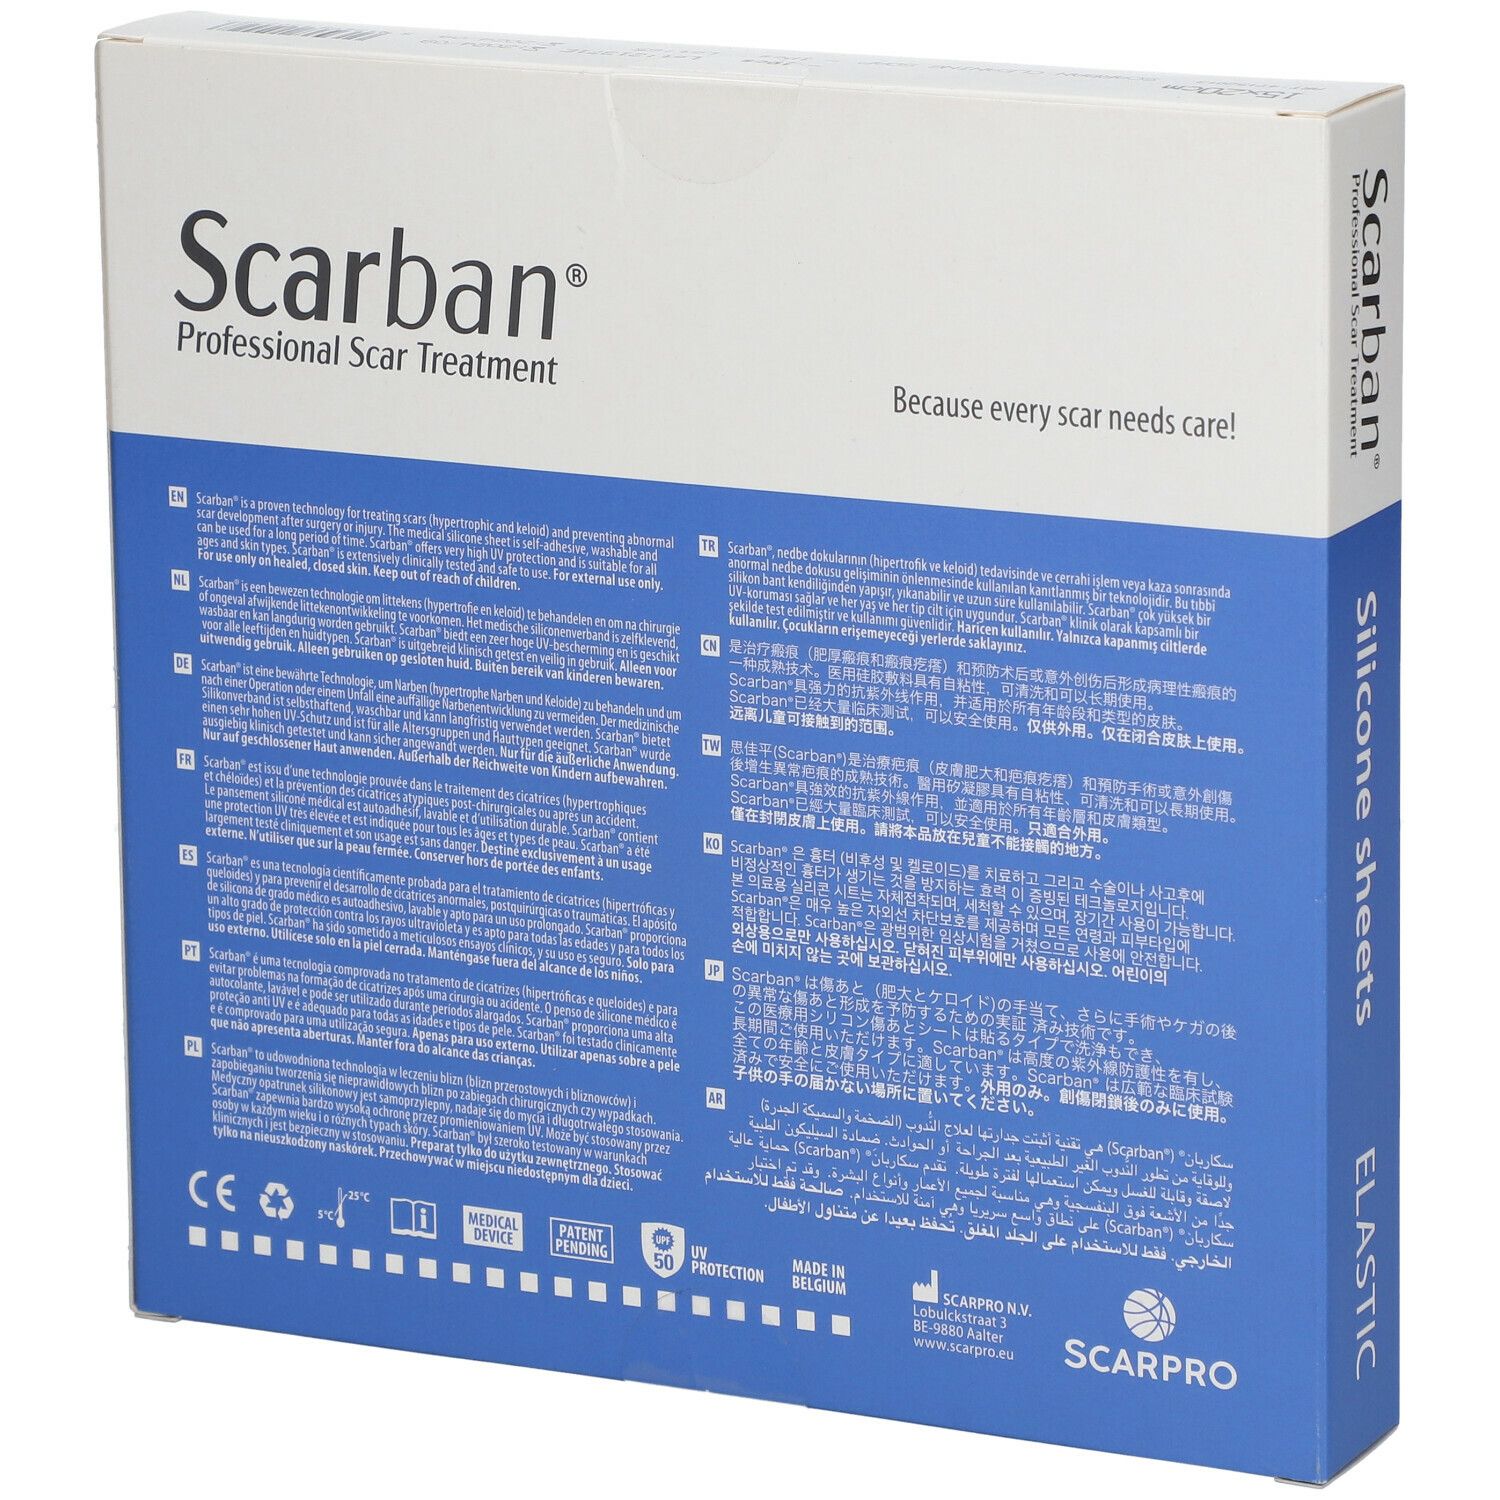 Scarban Elastic Silicone Sheet 15cm x 20cm